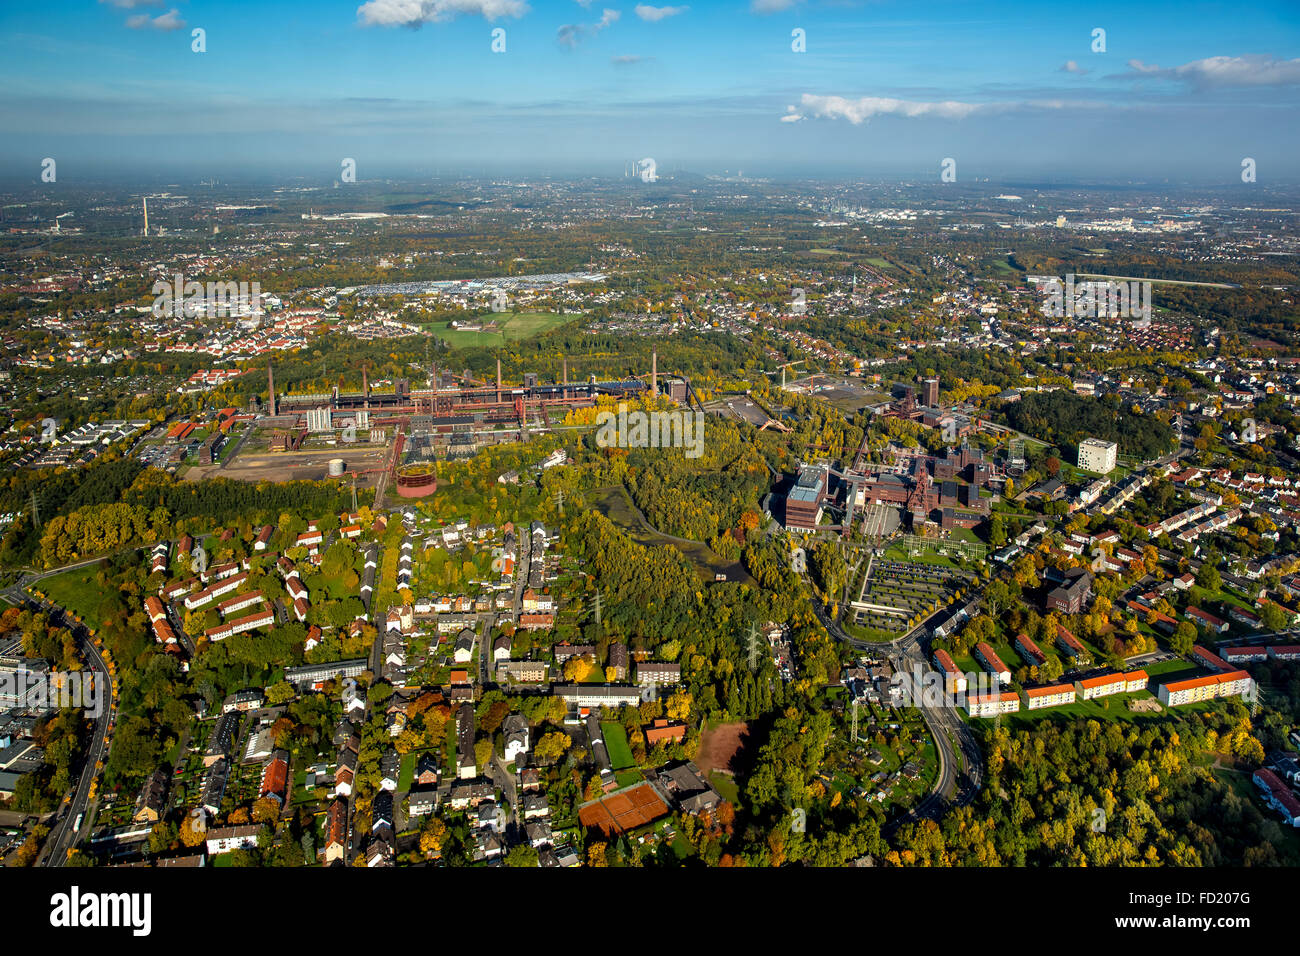 Vue de la ville et du complexe industriel de la mine de charbon de Zollverein, Essen, automne, Ruhr, Rhénanie du Nord-Westphalie, Allemagne Banque D'Images